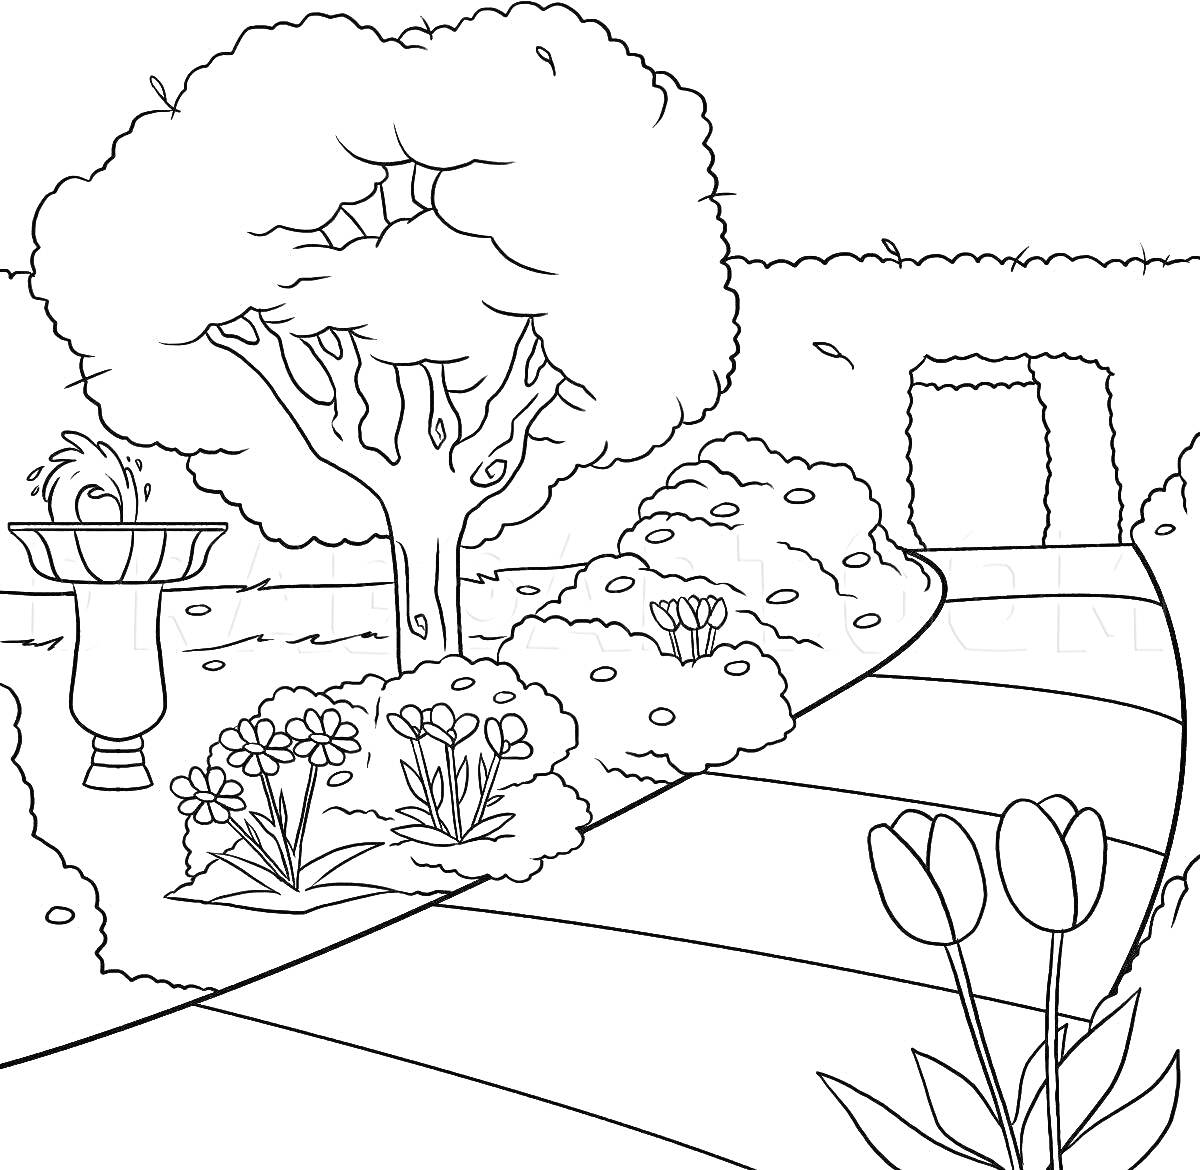 Раскраска Сад с фонтаном, деревом, цветами и дорожкой